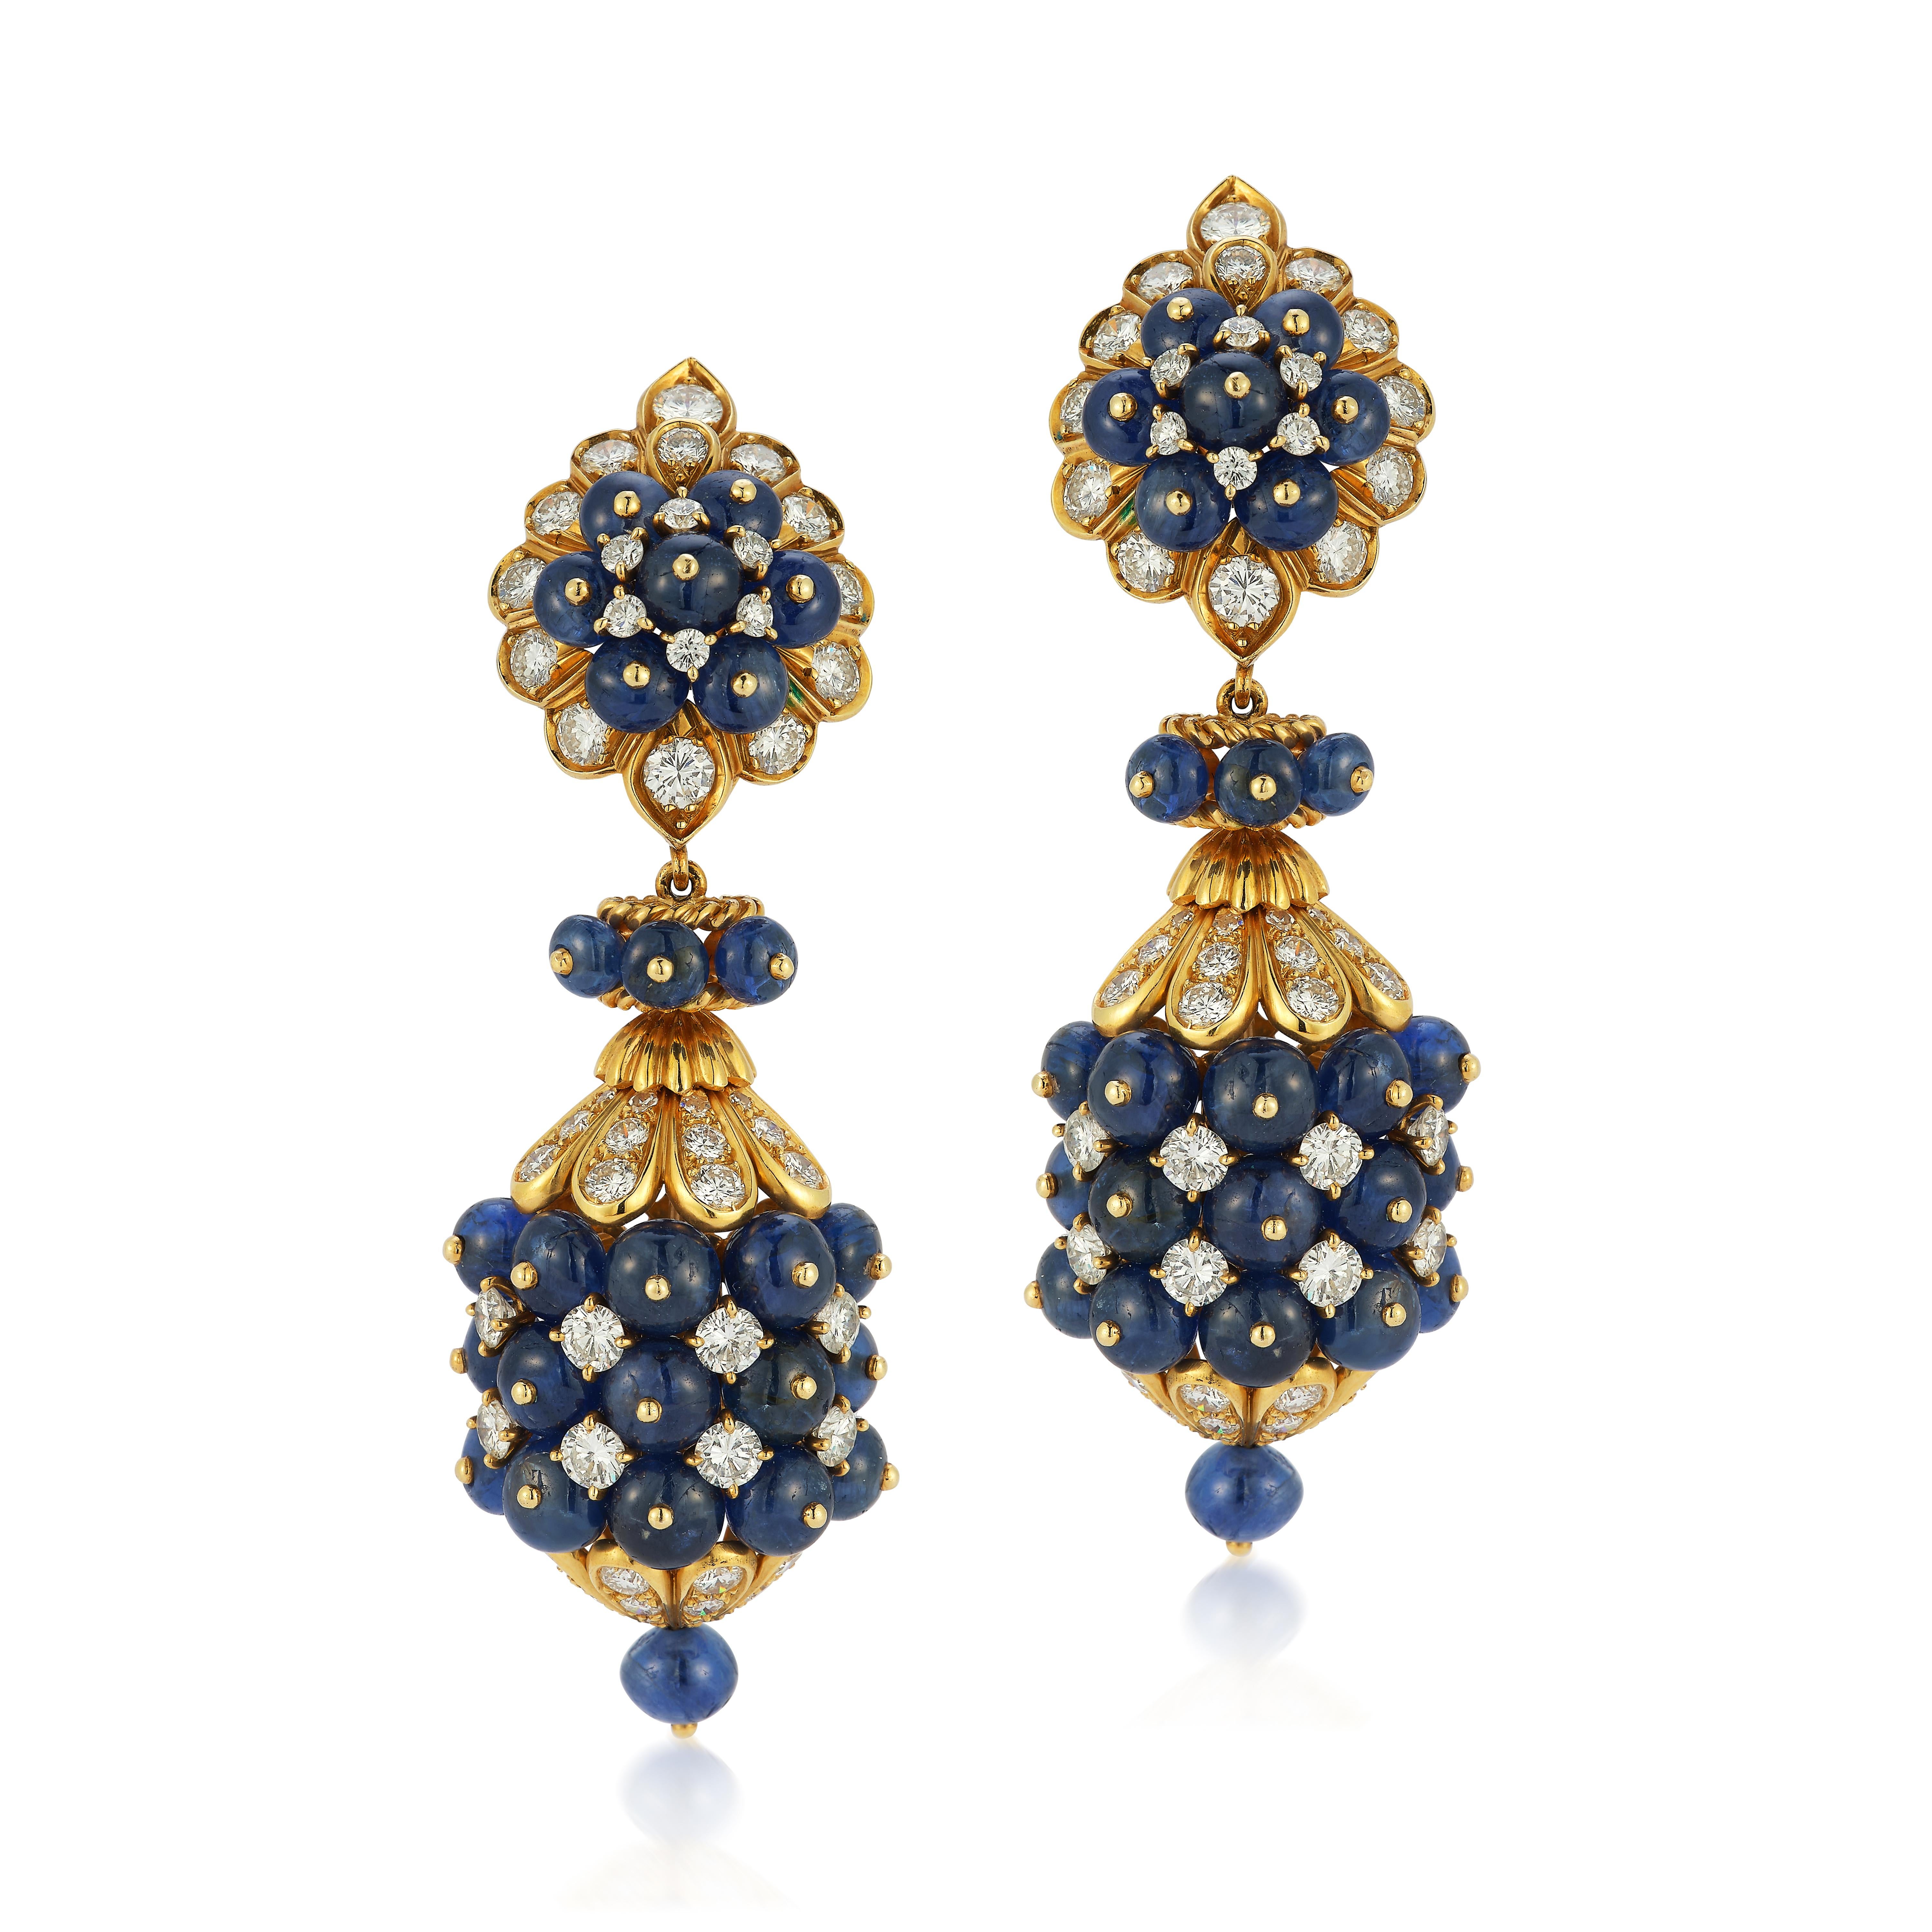 Van Cleef and Arpels Day and Night Sapphire Earrings - Paire de boucles d'oreilles en or 18 carats serties de perles de saphir et d'environ 6,1 carats de diamants ronds et taille unique. Les pendentifs sont détachables, ce qui permet de porter les